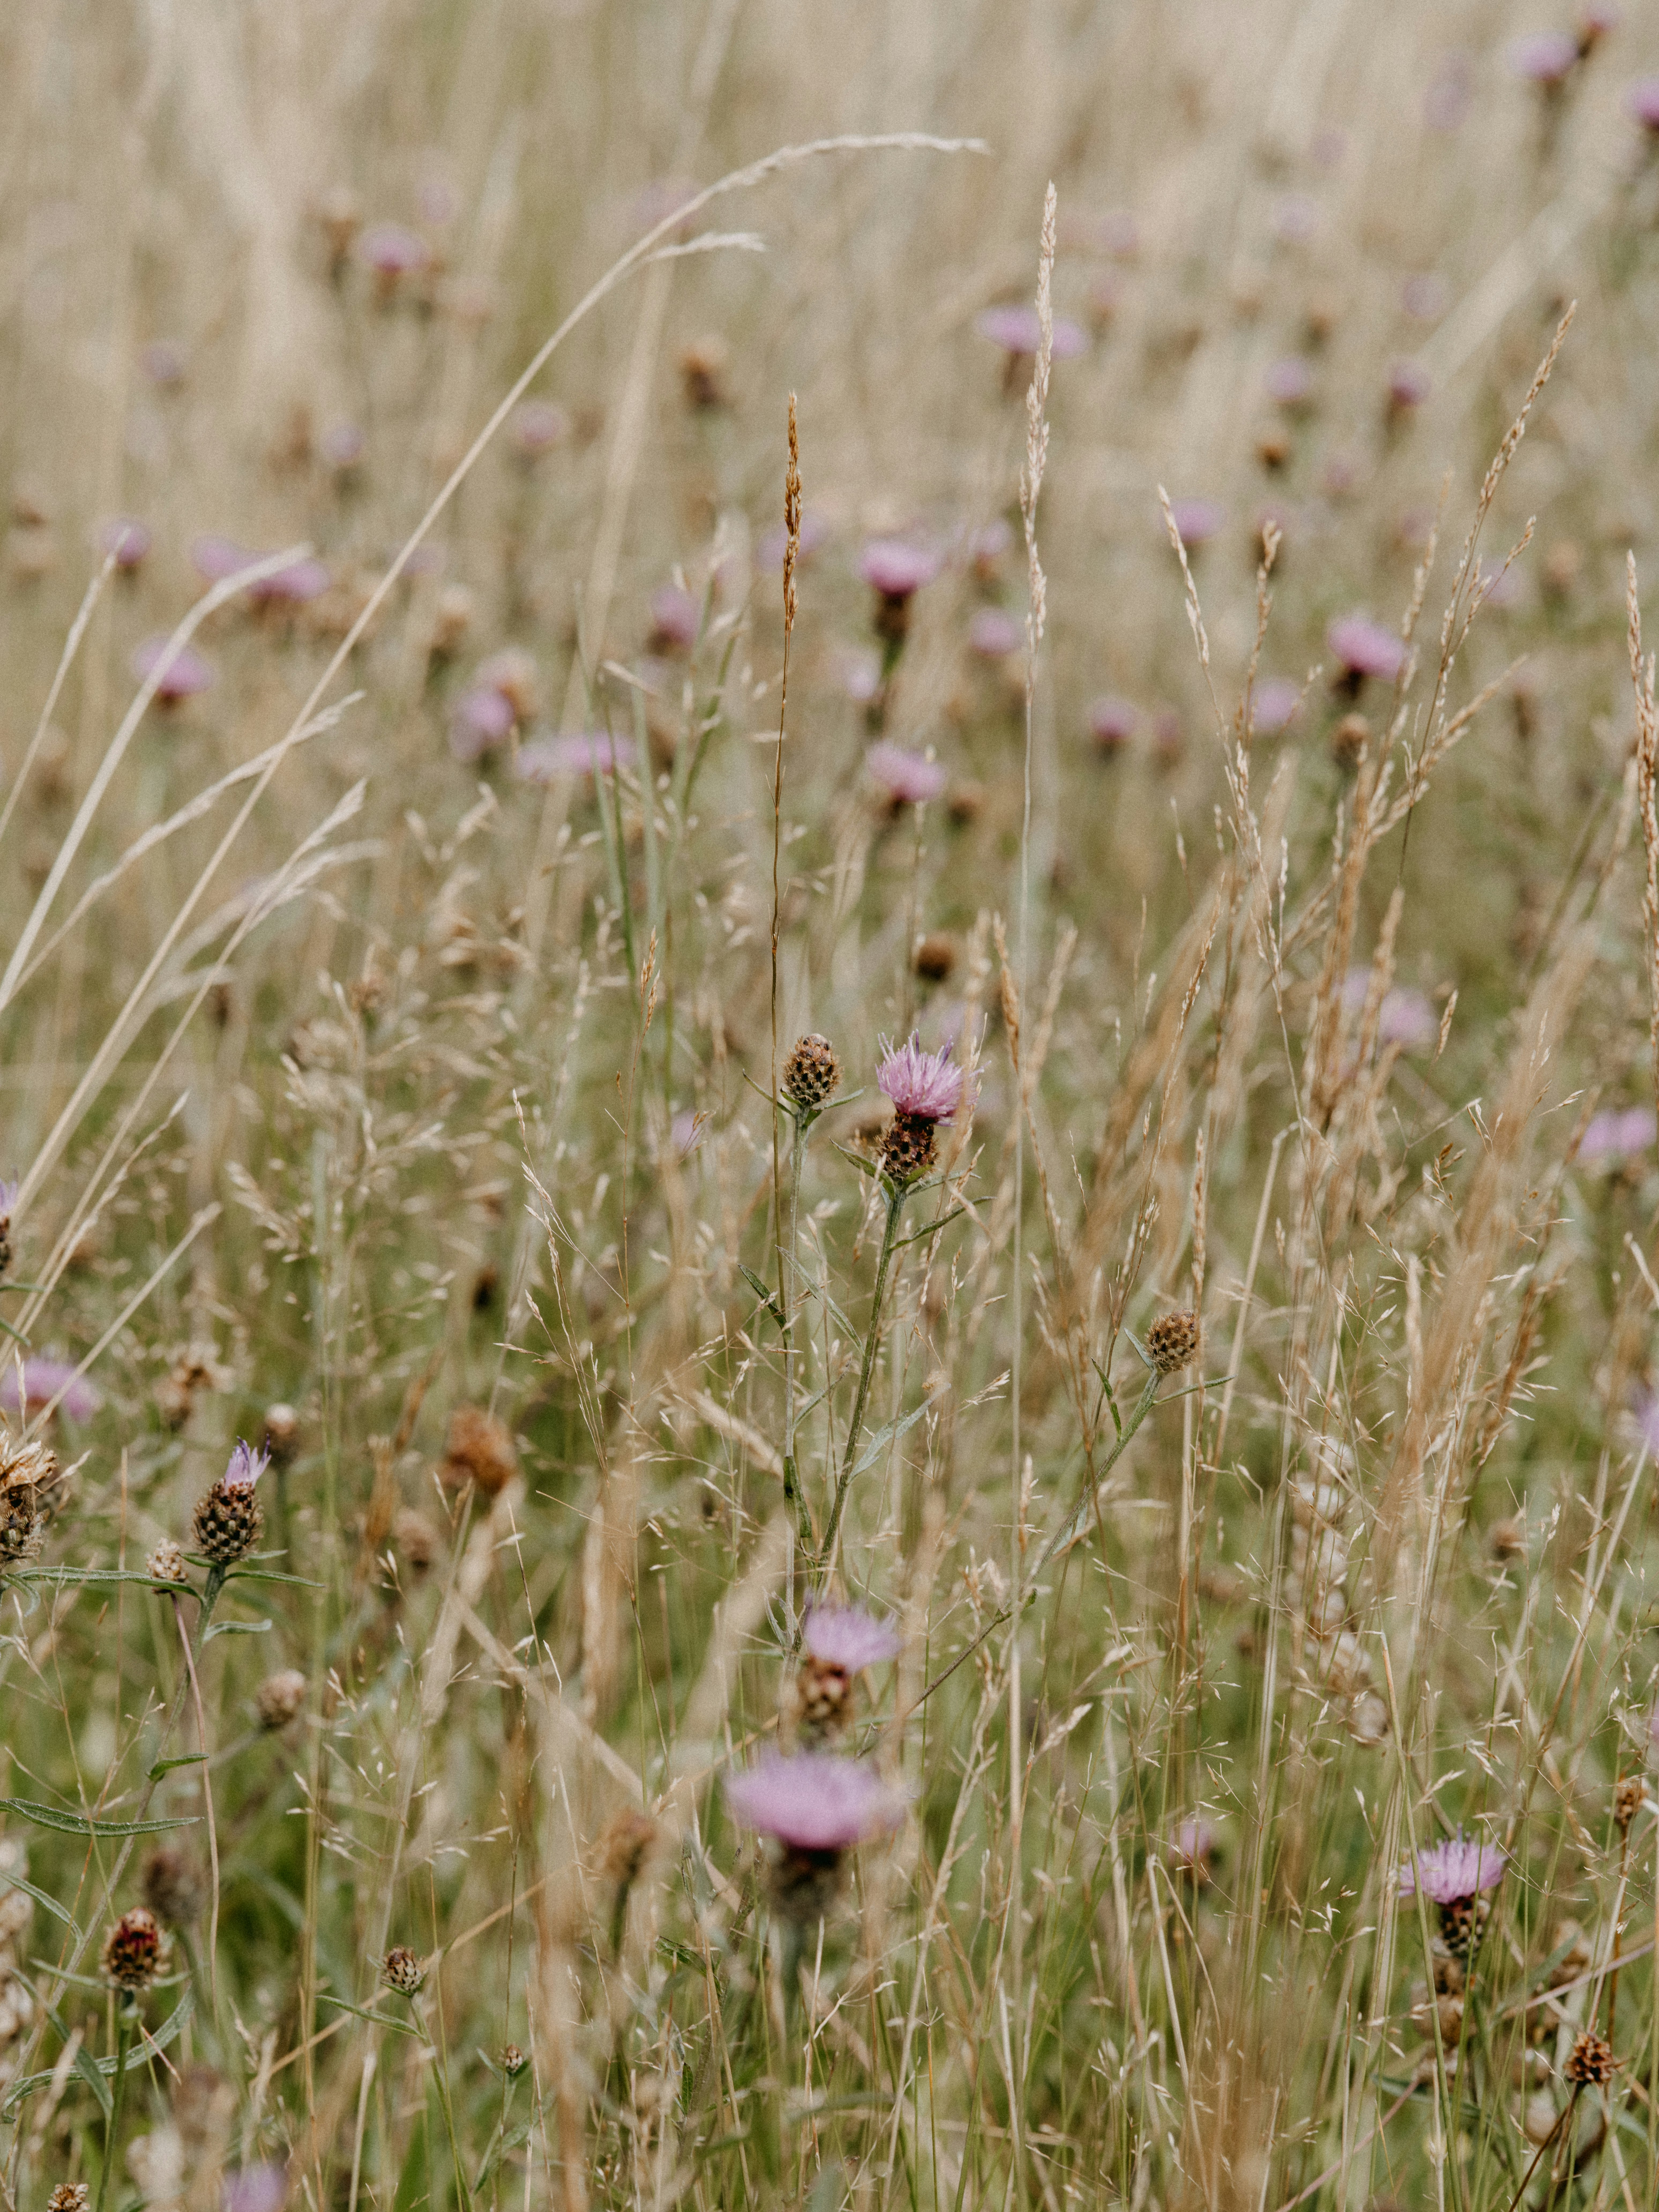 pink flower field during daytime